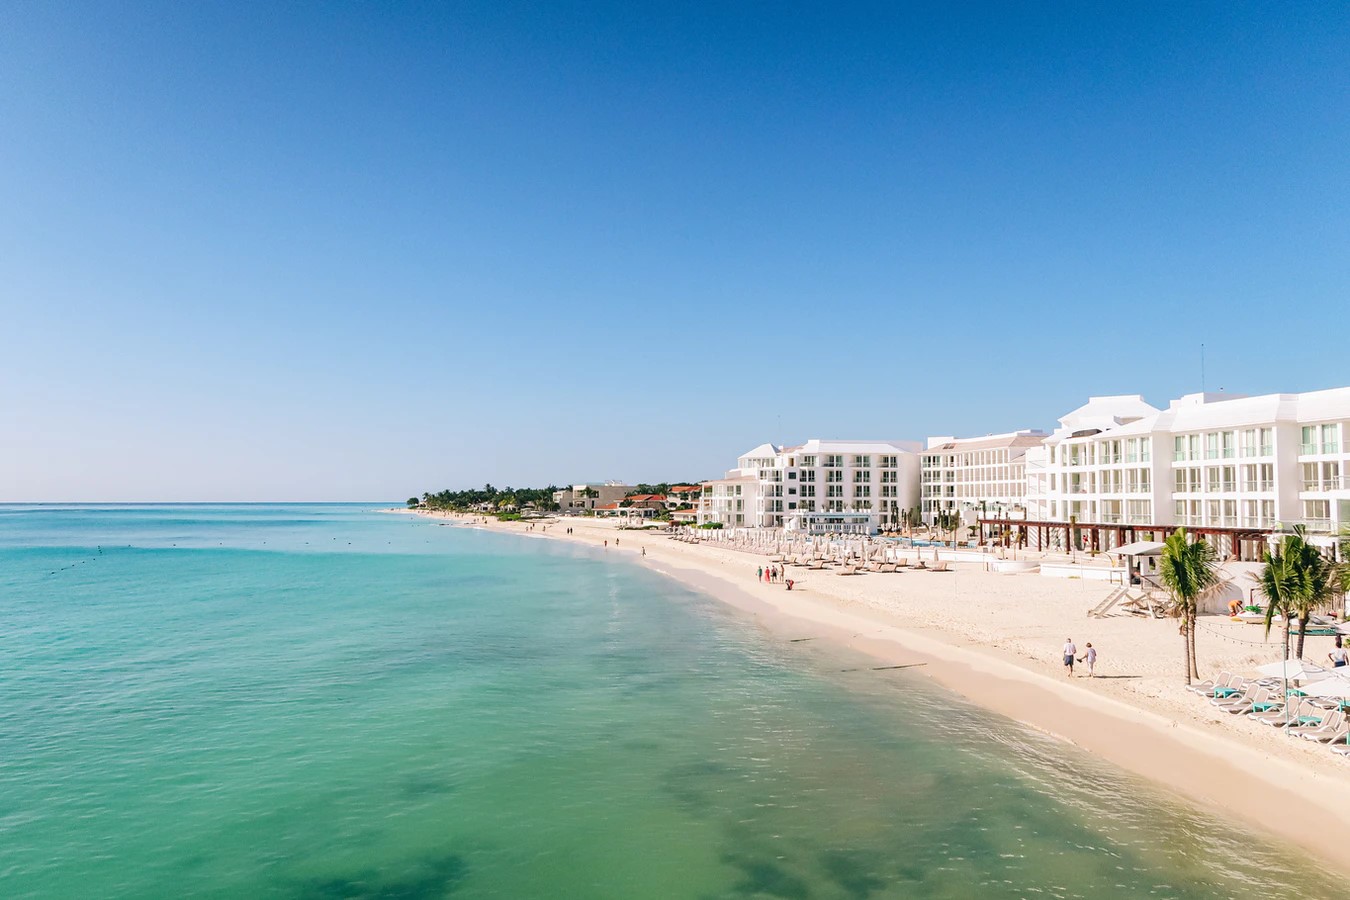 Beachfront hotel near Cancun